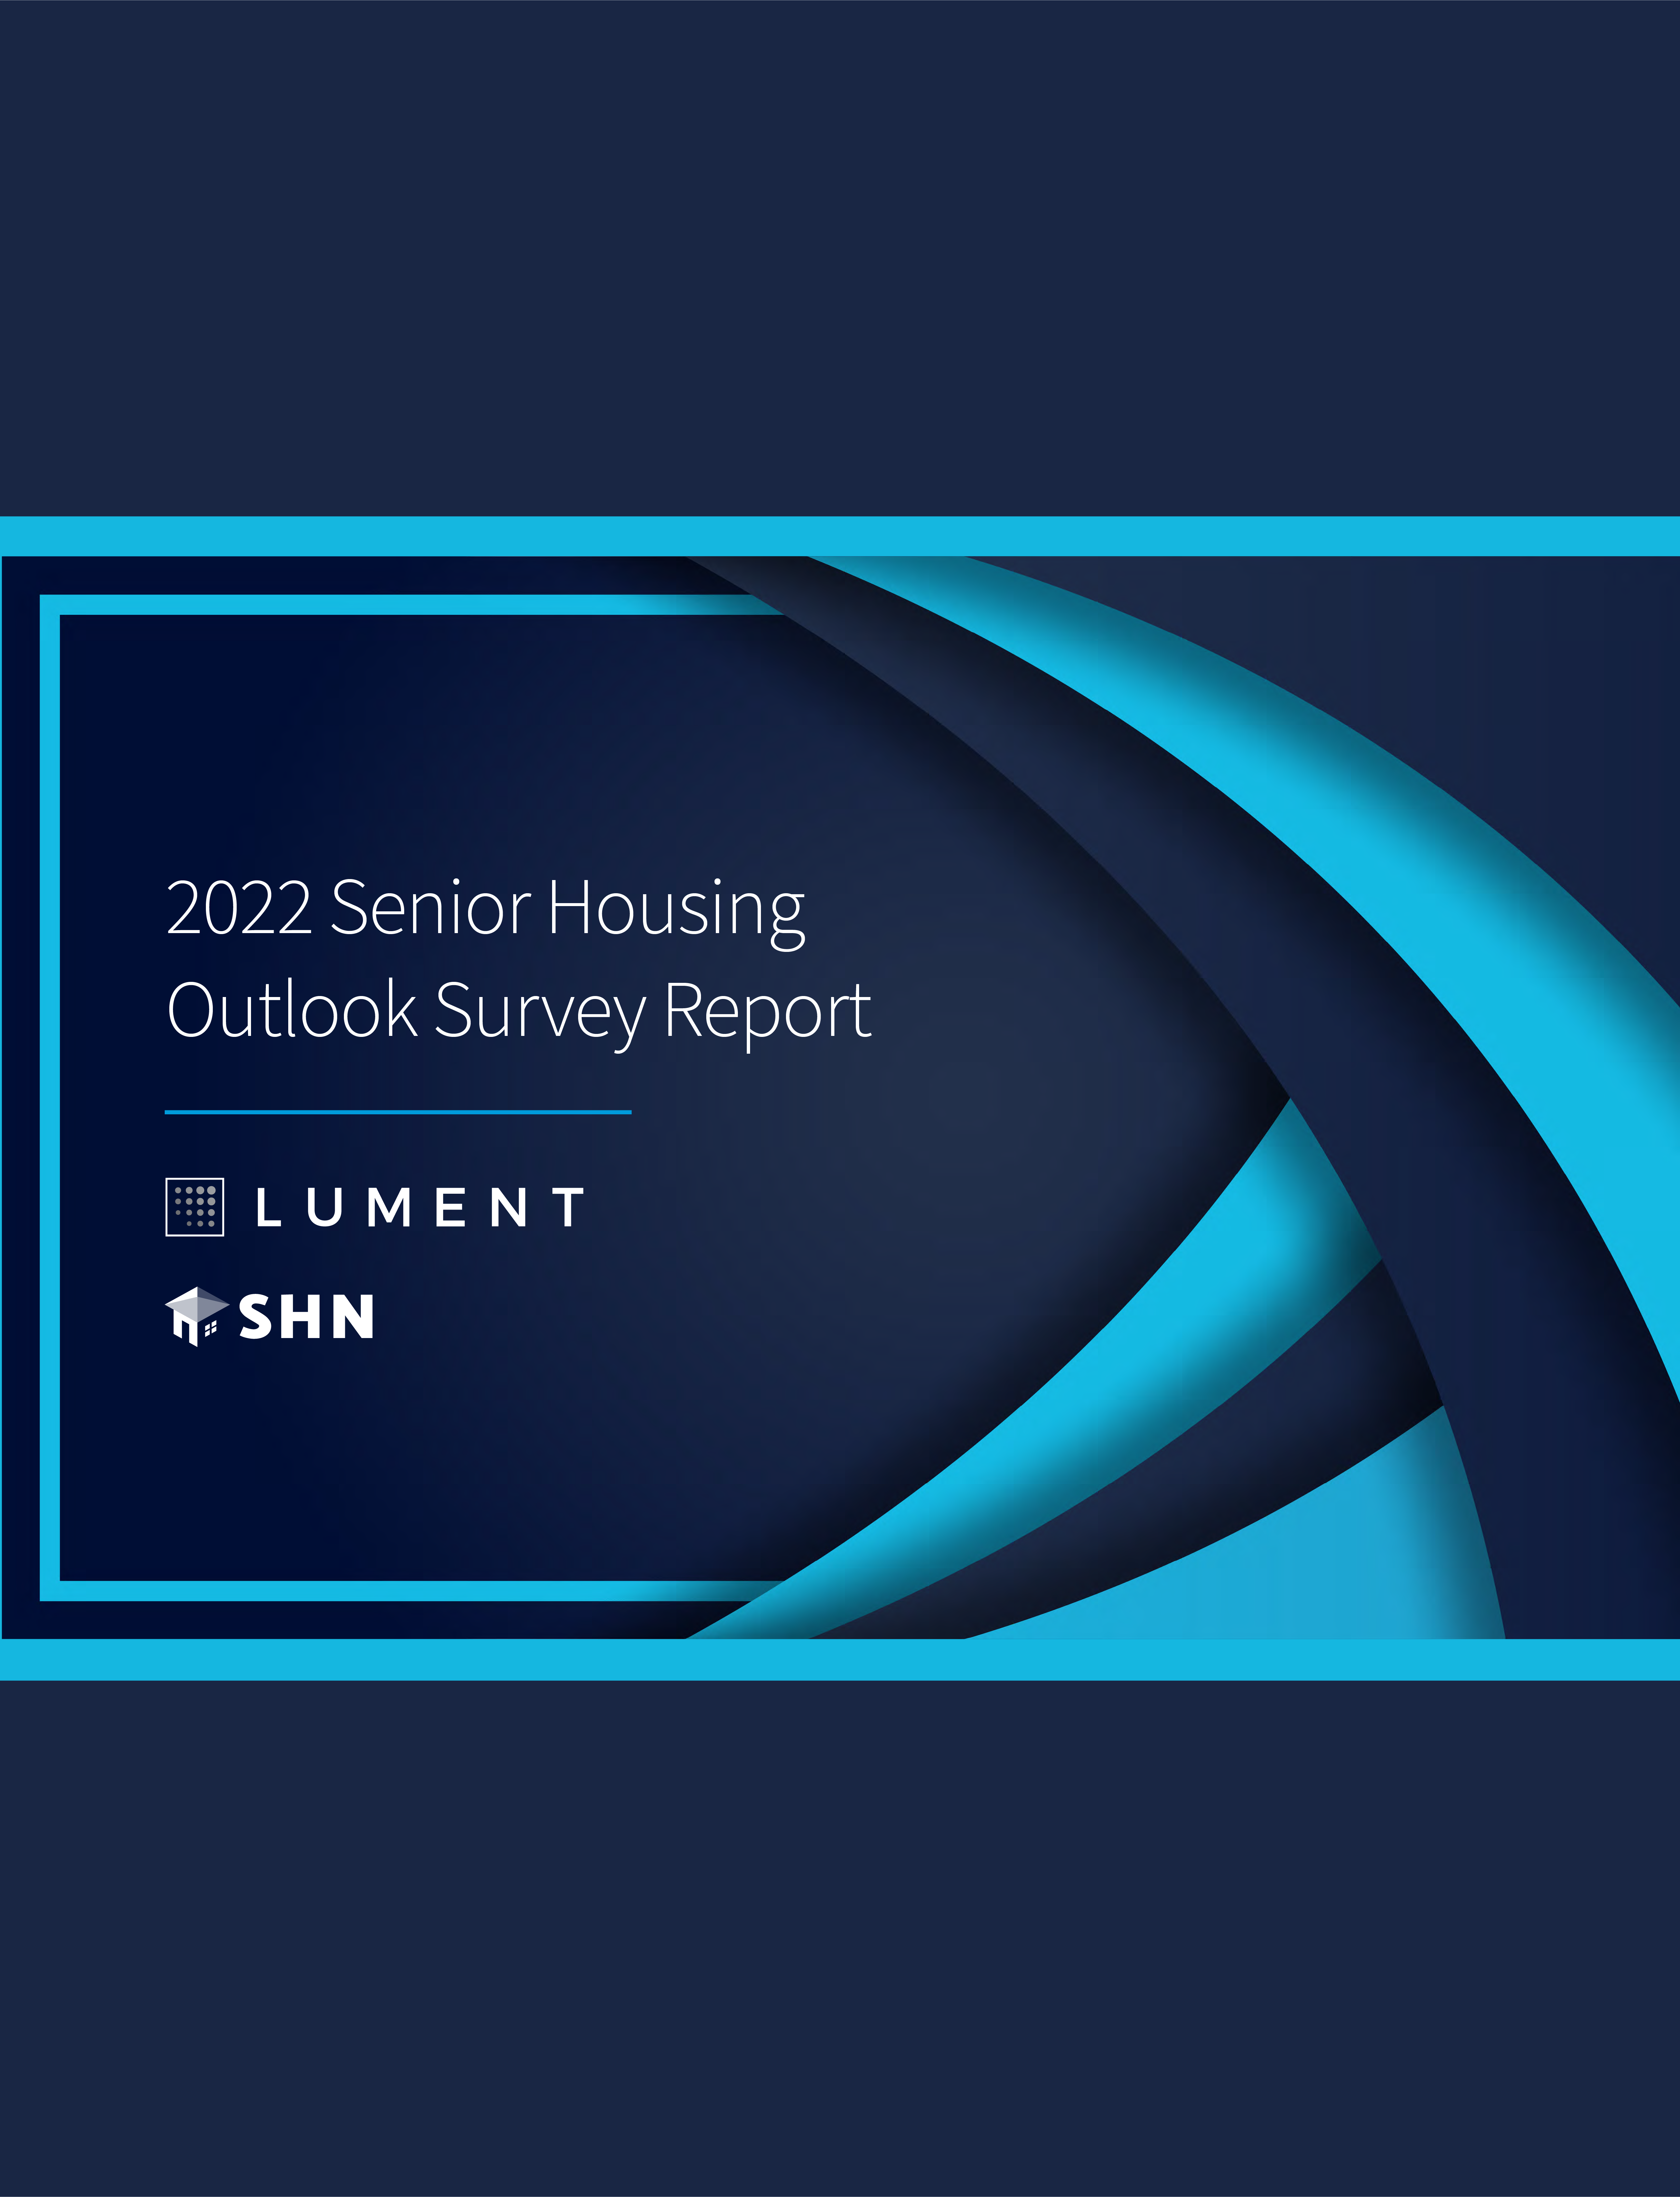 [eBook] Senior Housing Industry Outlook: 2022